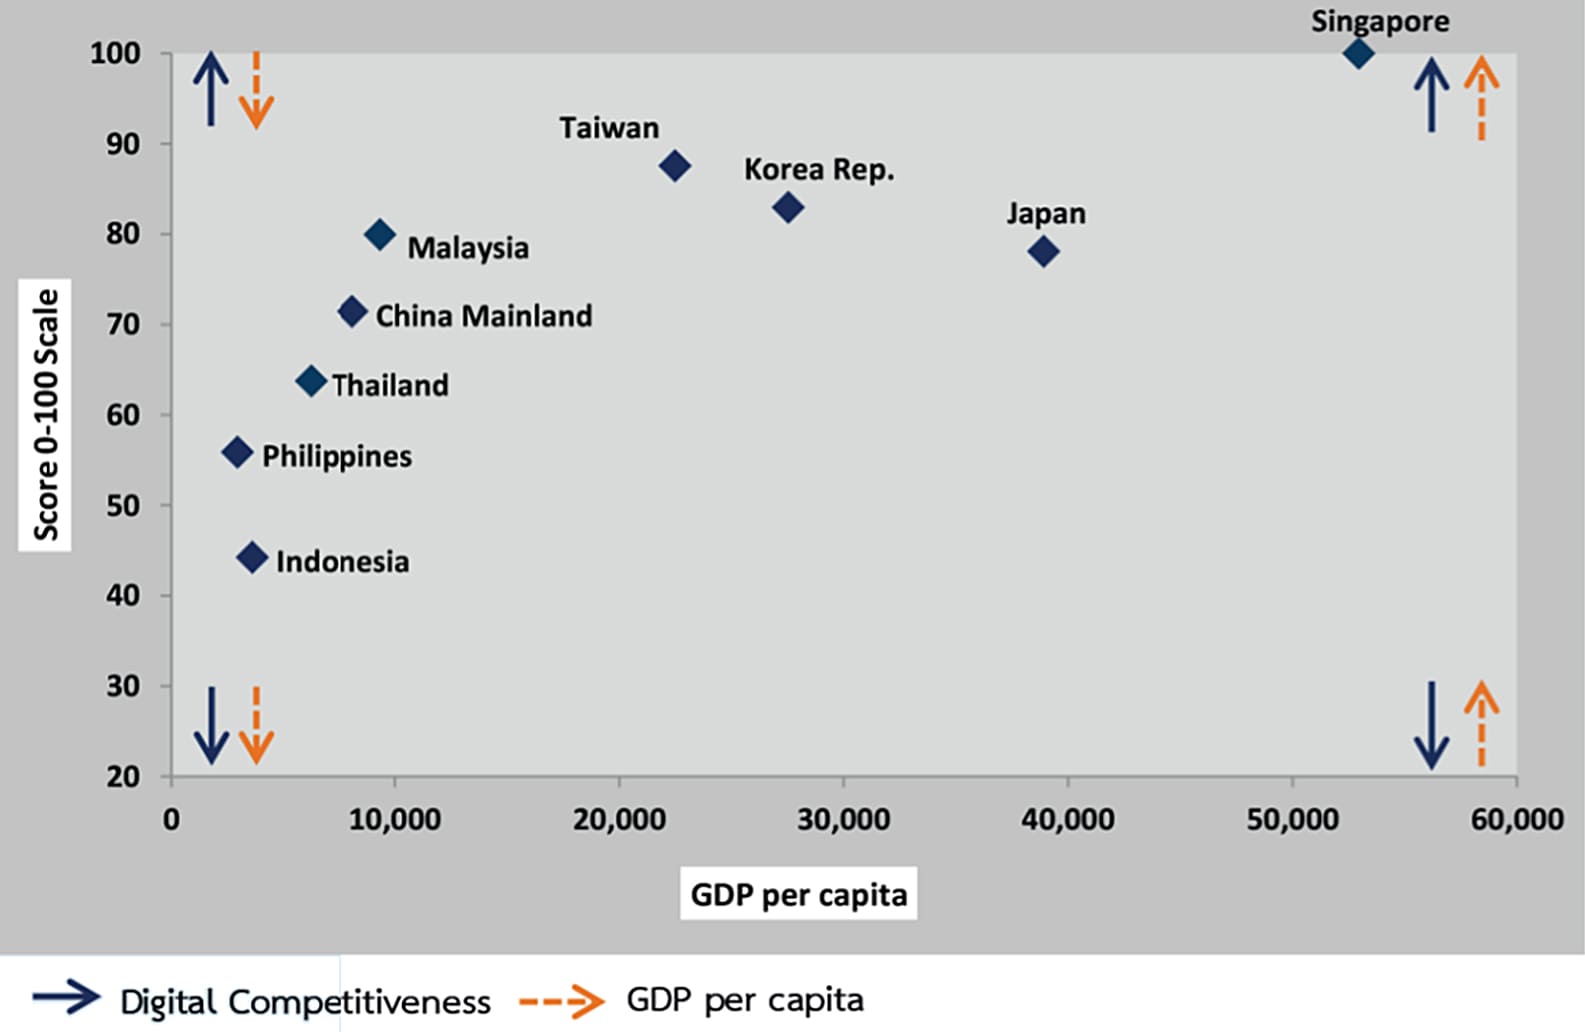 ความสามารถในการแข่งขันด้านดิจิทัล (Digital Competitiveness) และรายได้ต่อหัวประชากร(GDP per capita) แต่ละประเทศ